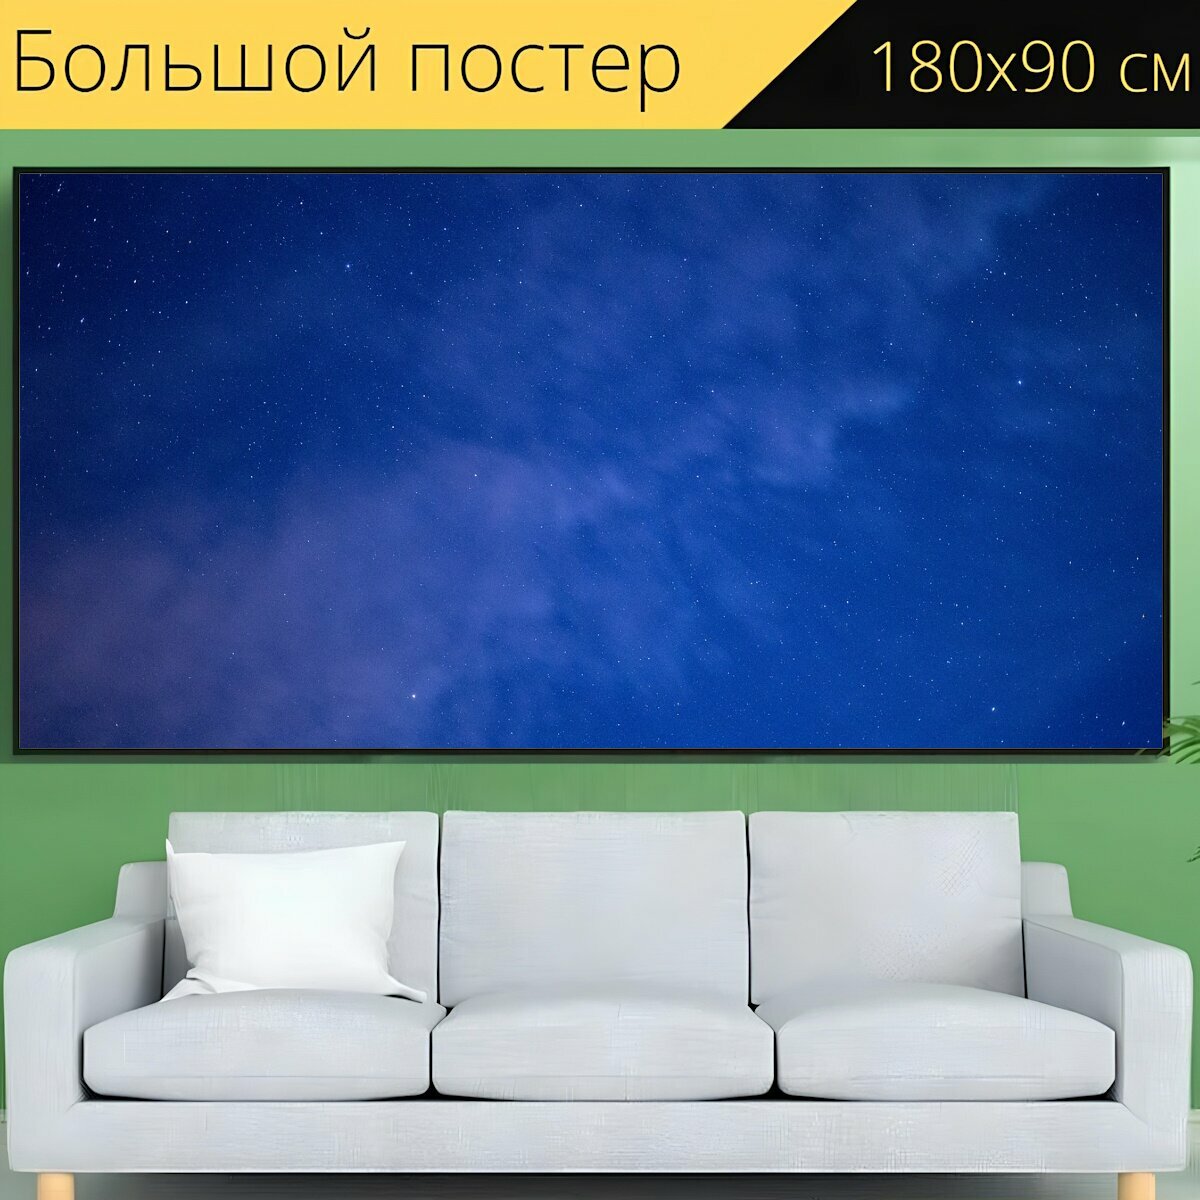 Большой постер "Облака, природа, ночь" 180 x 90 см. для интерьера